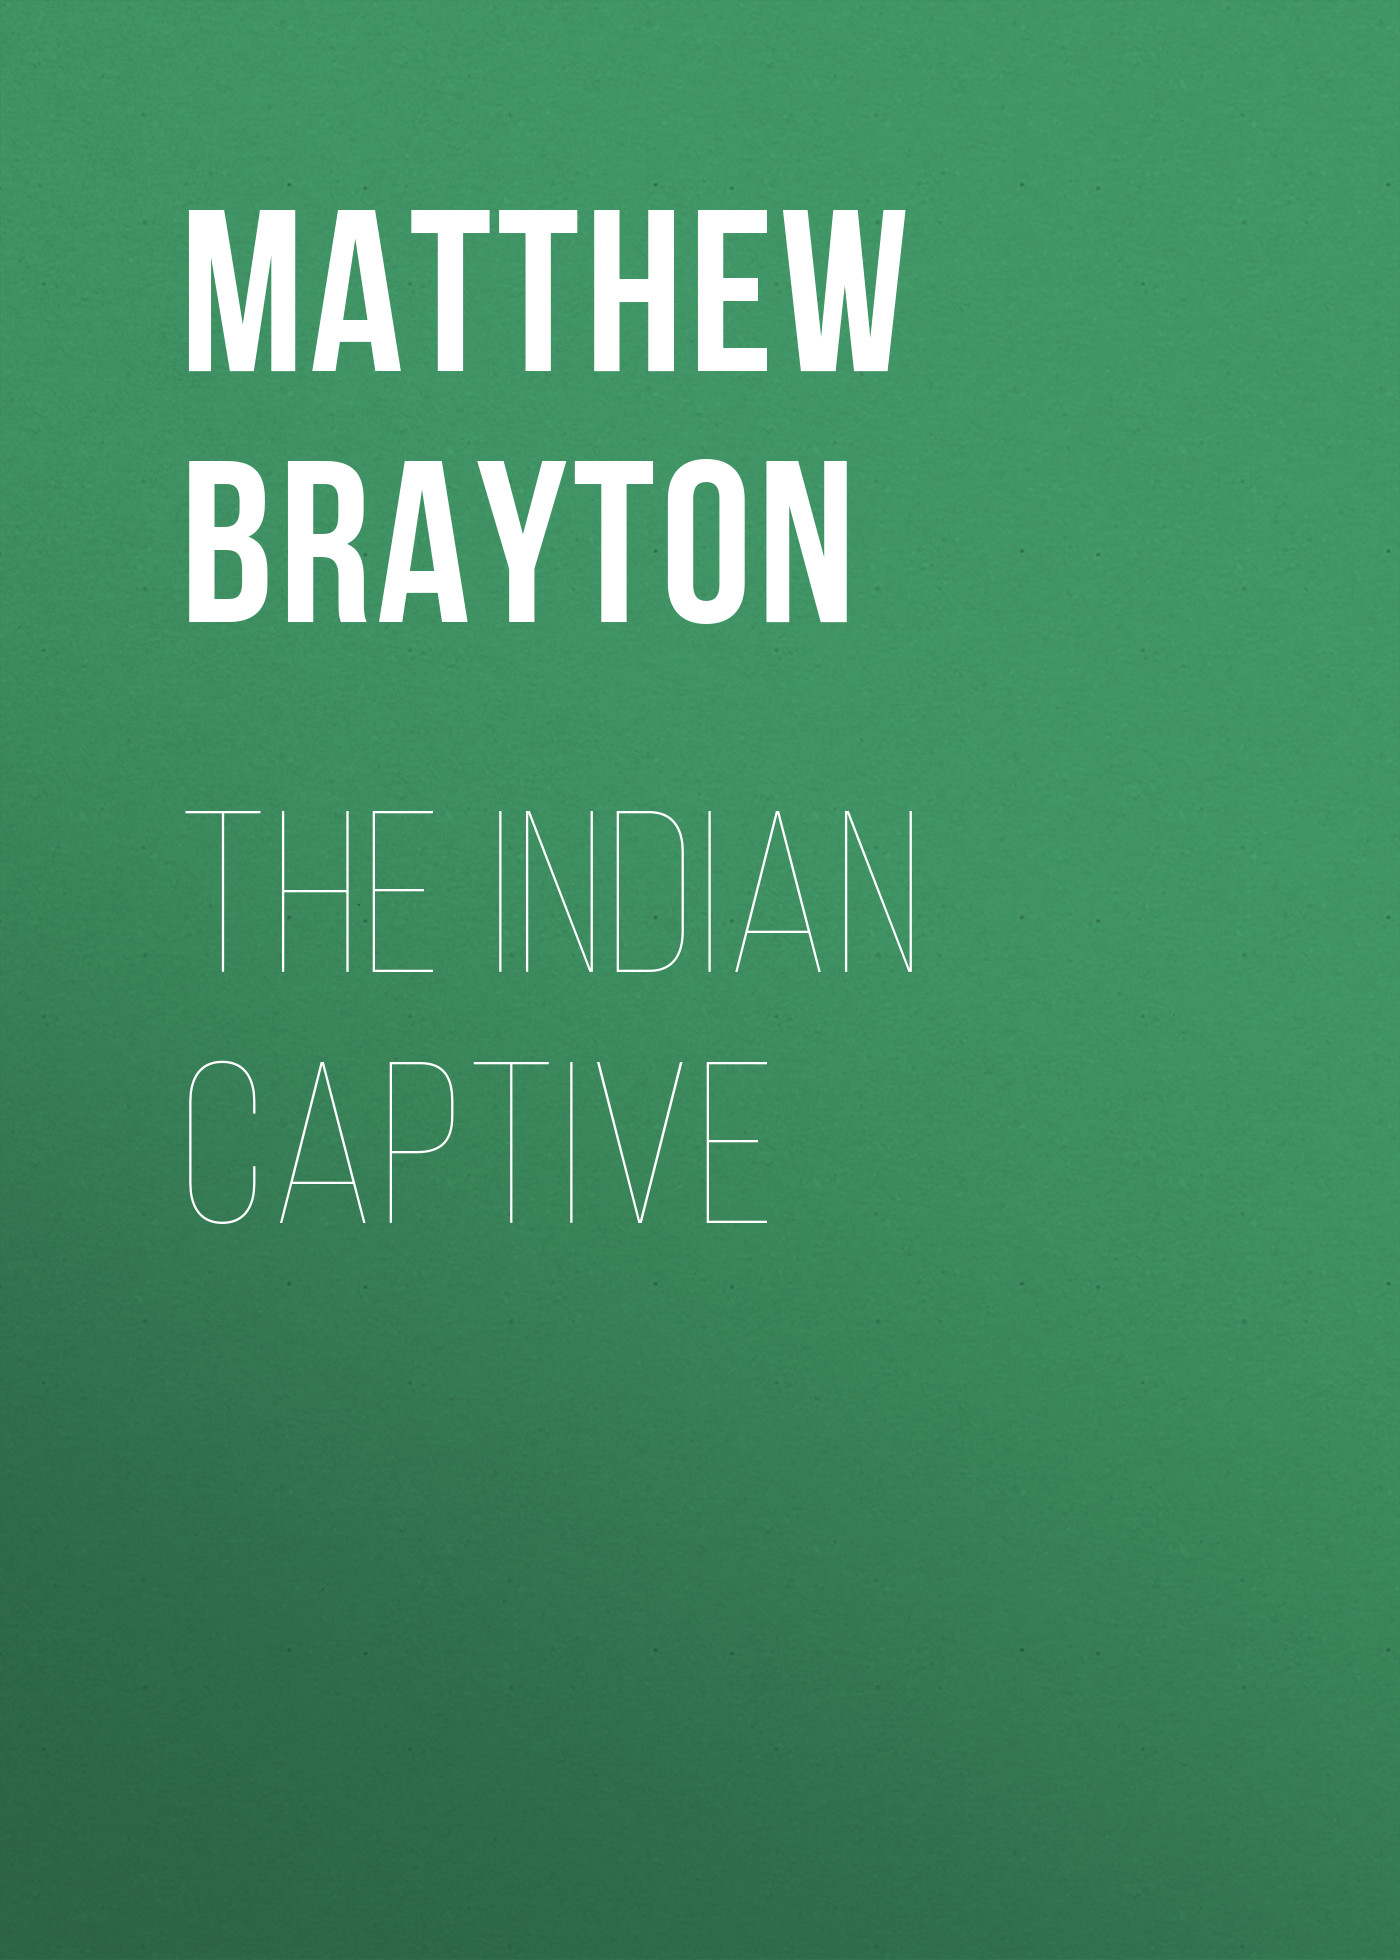 Книга The Indian Captive из серии , созданная Matthew Brayton, может относится к жанру Зарубежная старинная литература, Зарубежная классика, Биографии и Мемуары. Стоимость электронной книги The Indian Captive с идентификатором 24172948 составляет 0.90 руб.